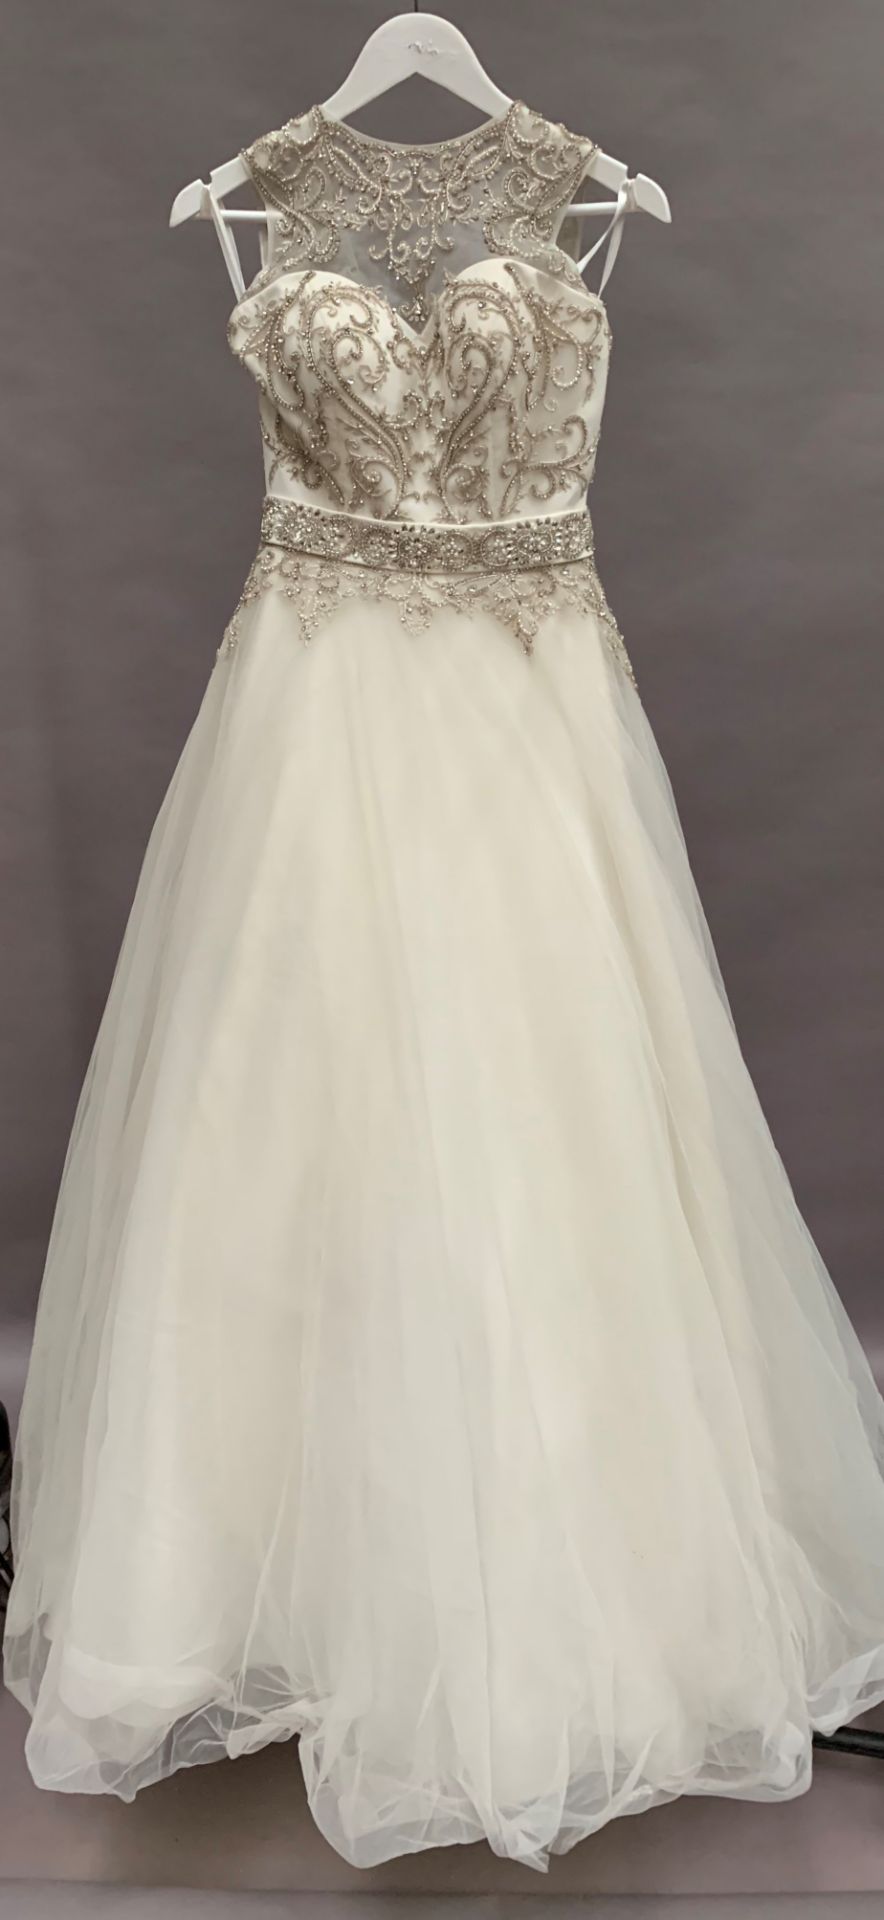 Wedding dress - style W9193 - ivory - size 6